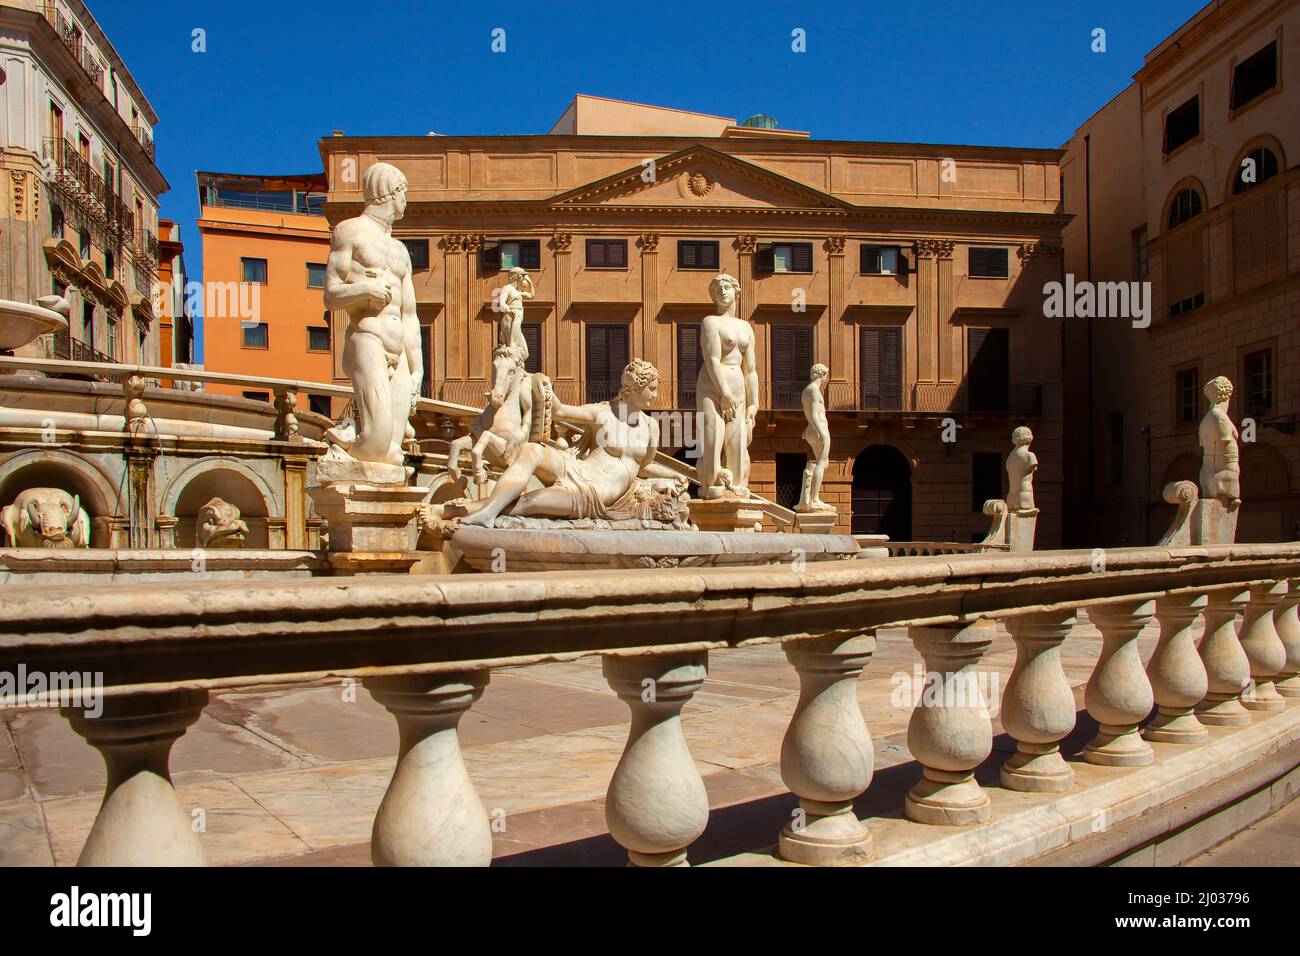 Piazza Pretoria, Pretoria fountain, Palermo, Sicily, Italy, Europe Stock Photo